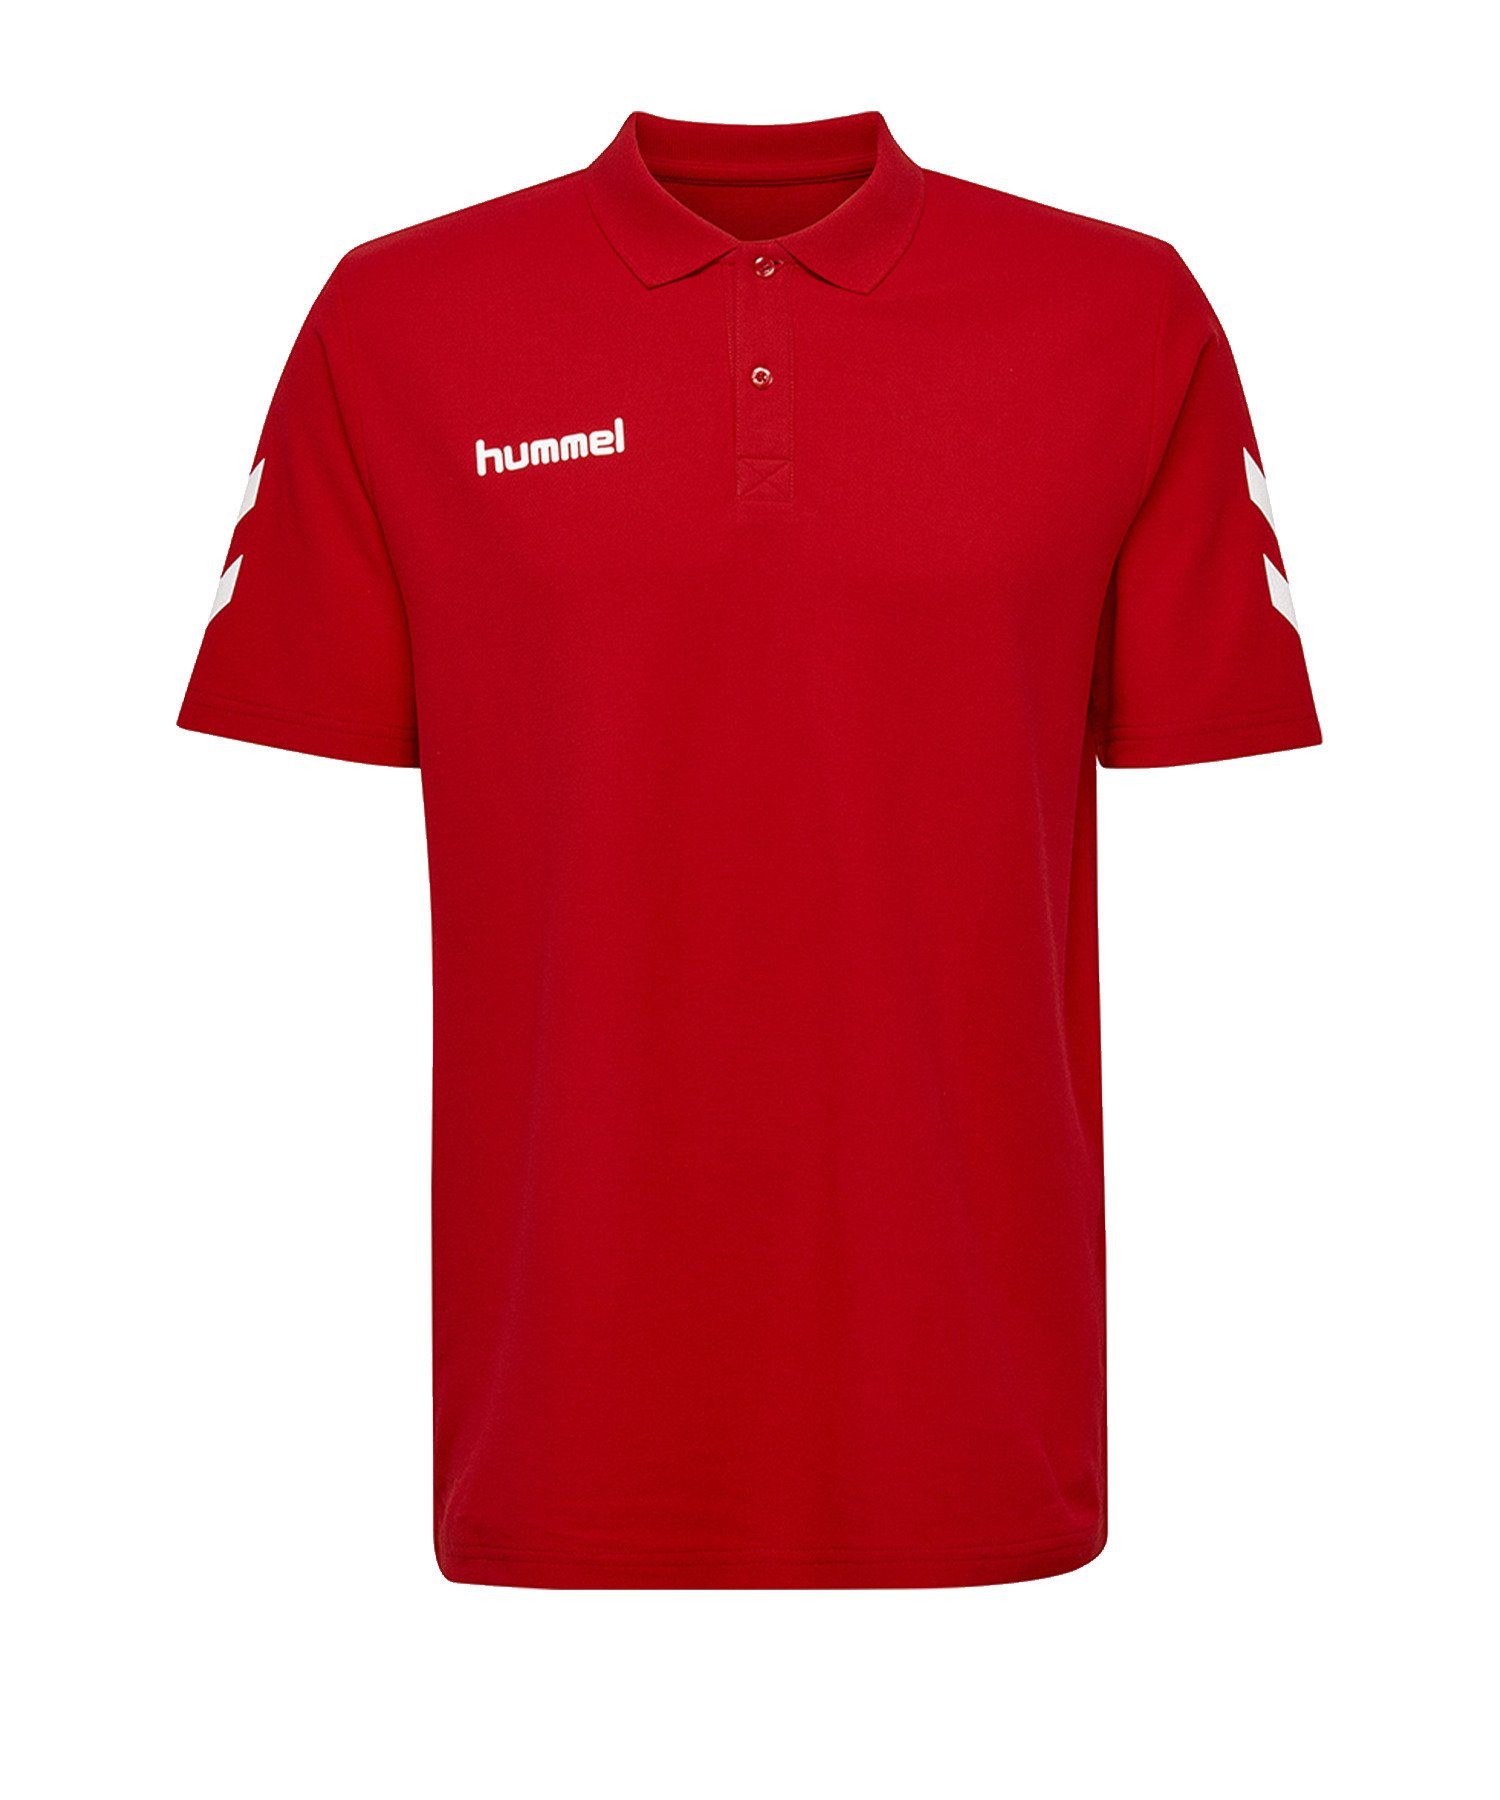 hummel T-Shirt Cotton Poloshirt default Rot